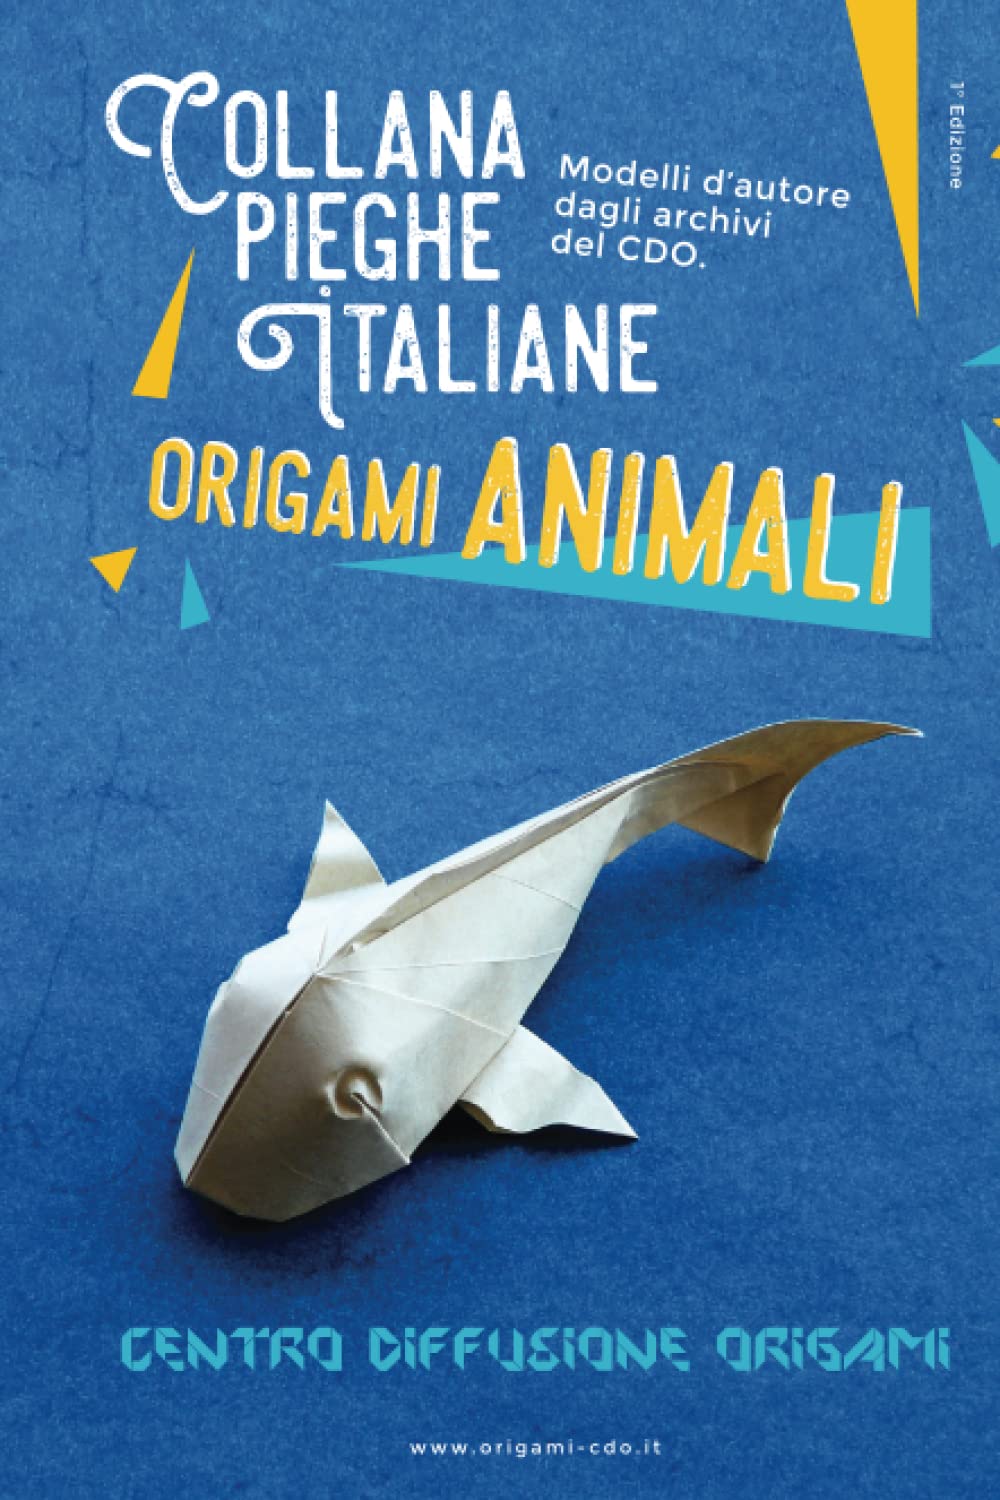 Collana pieghe Italiane - origami ANIMALI : page 138.